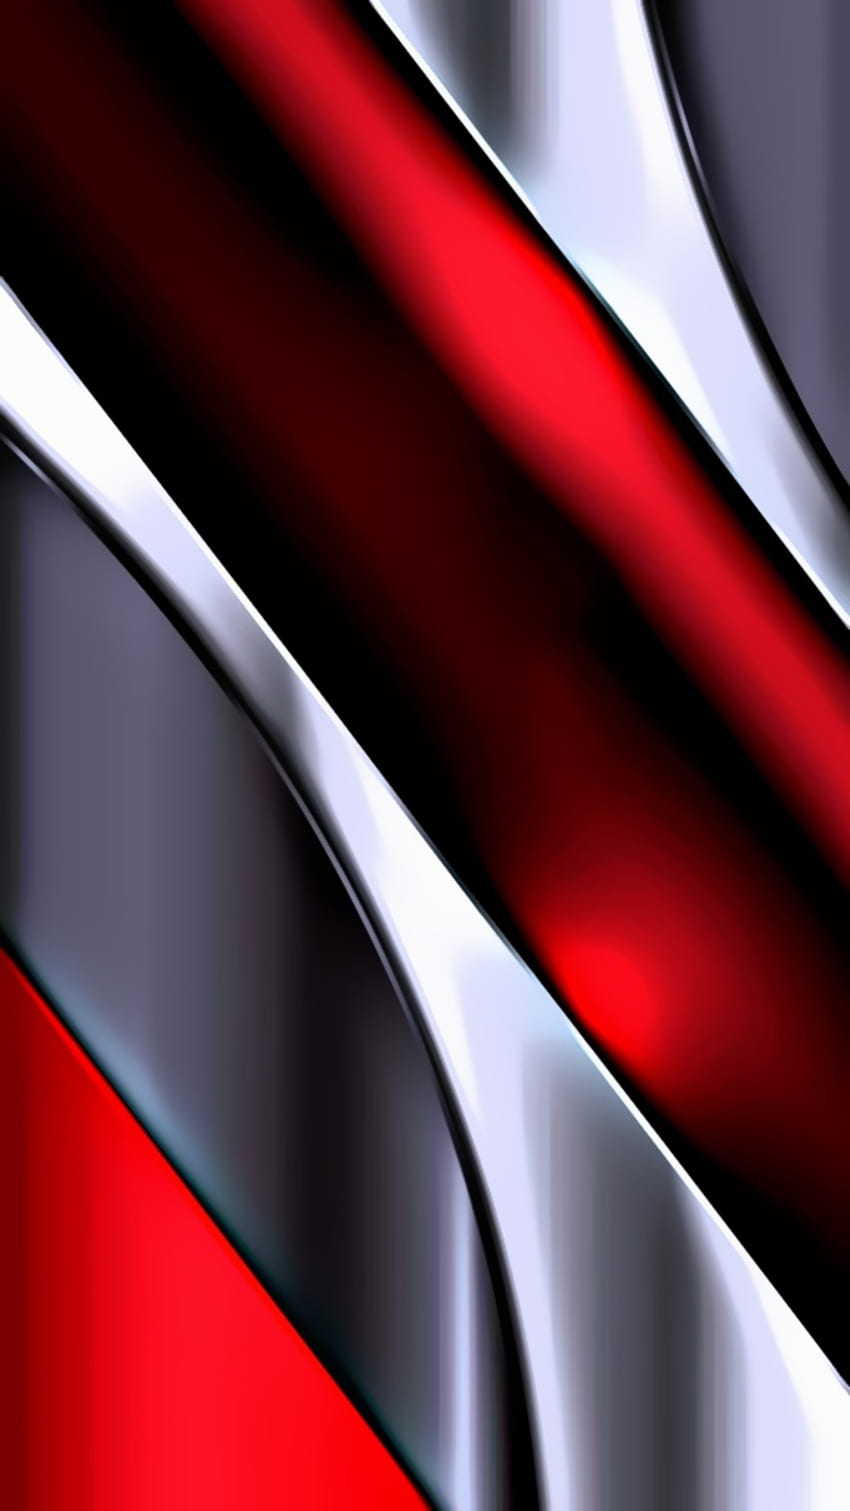 Vermelho prateado preto novo, digital, tecnologia, amoled, material, neon, design, padrão, brilhante, abstrato Papel de parede de celular HD